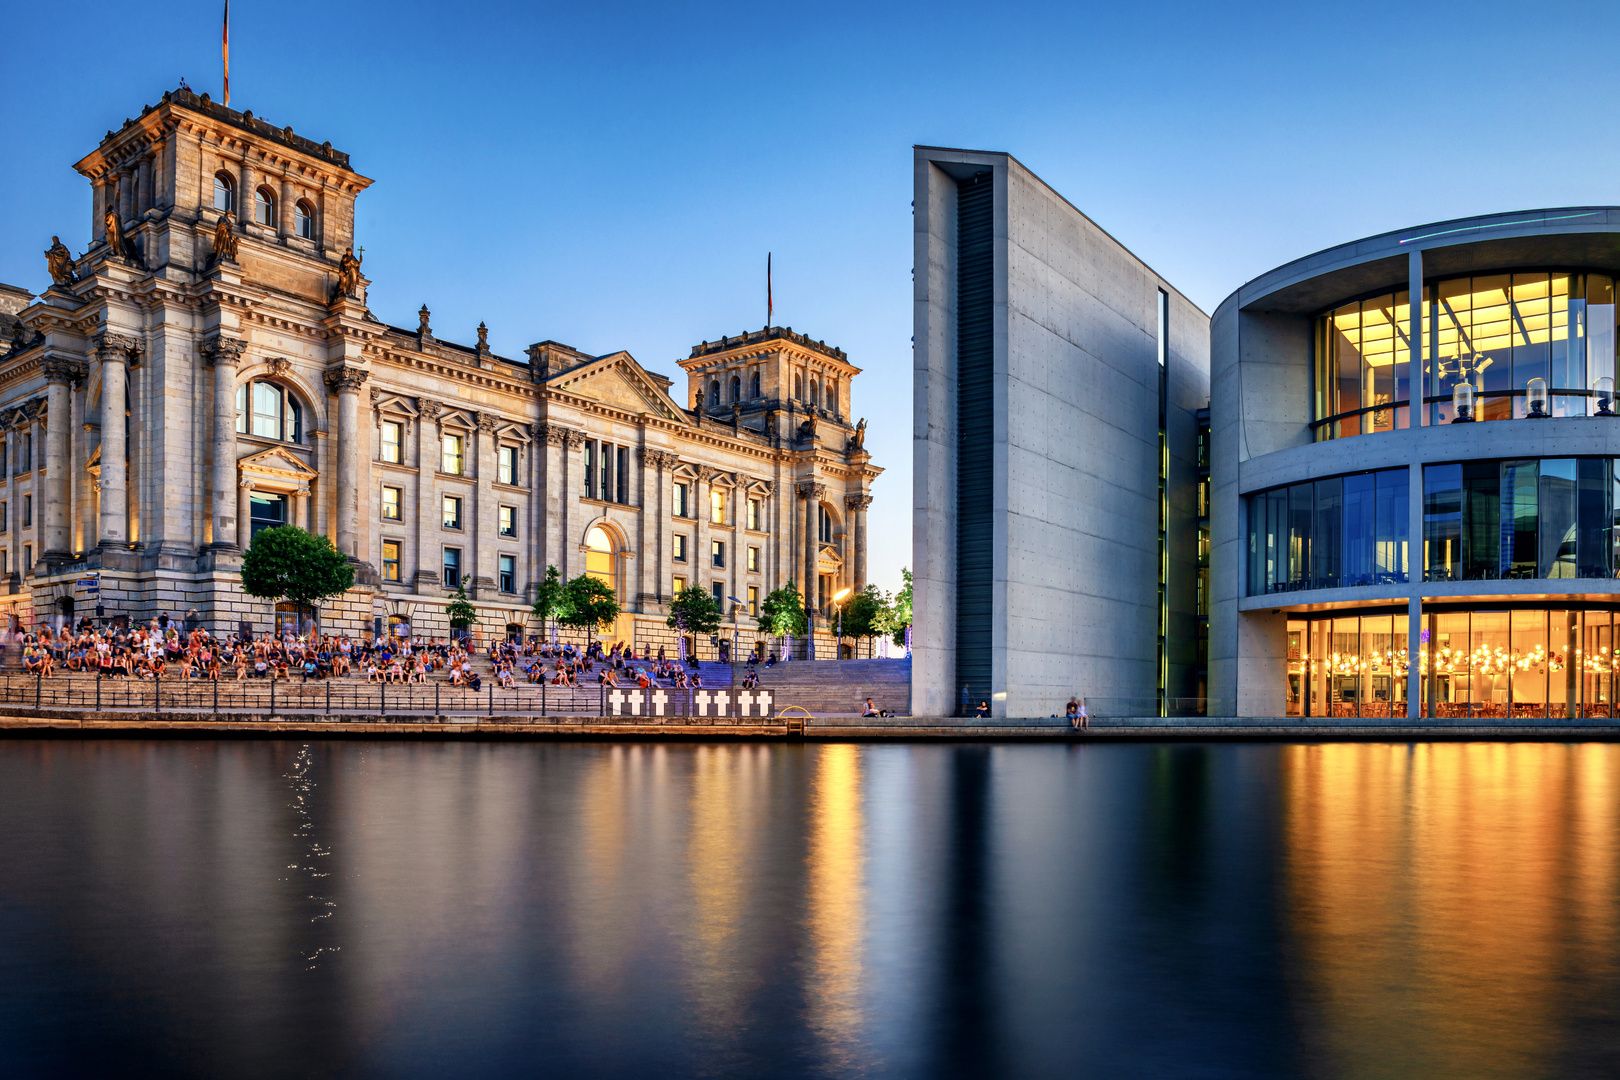 Reichstag / Paul-Löbe-Haus zur blauen Stunde